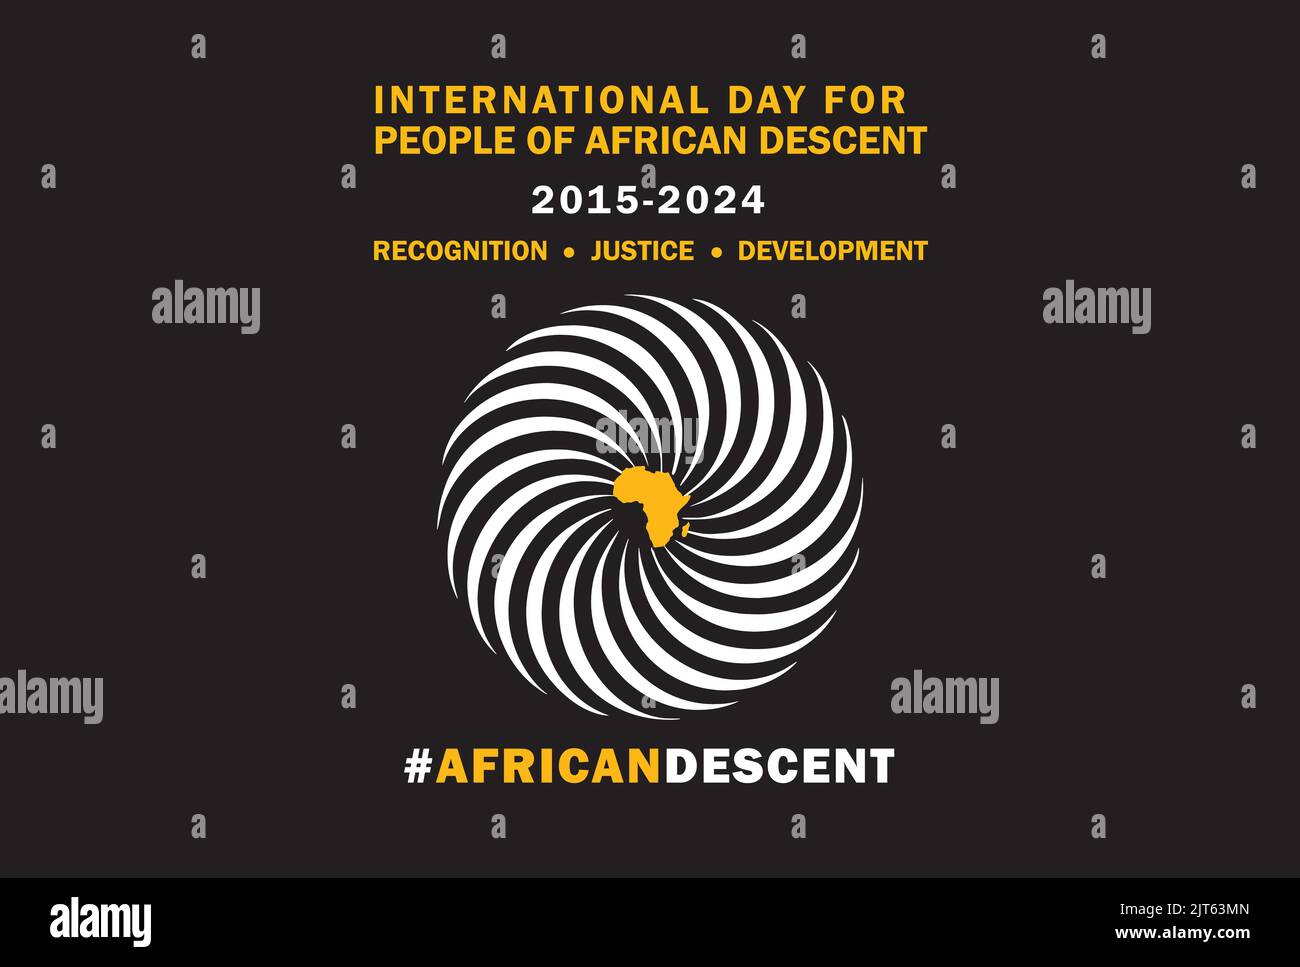 Journée internationale pour les personnes d'ascendance africaine - a désigné 31 août - le CNRC et le CDF pour observer la Journée internationale pour les personnes d'ascendance africaine Illustration de Vecteur